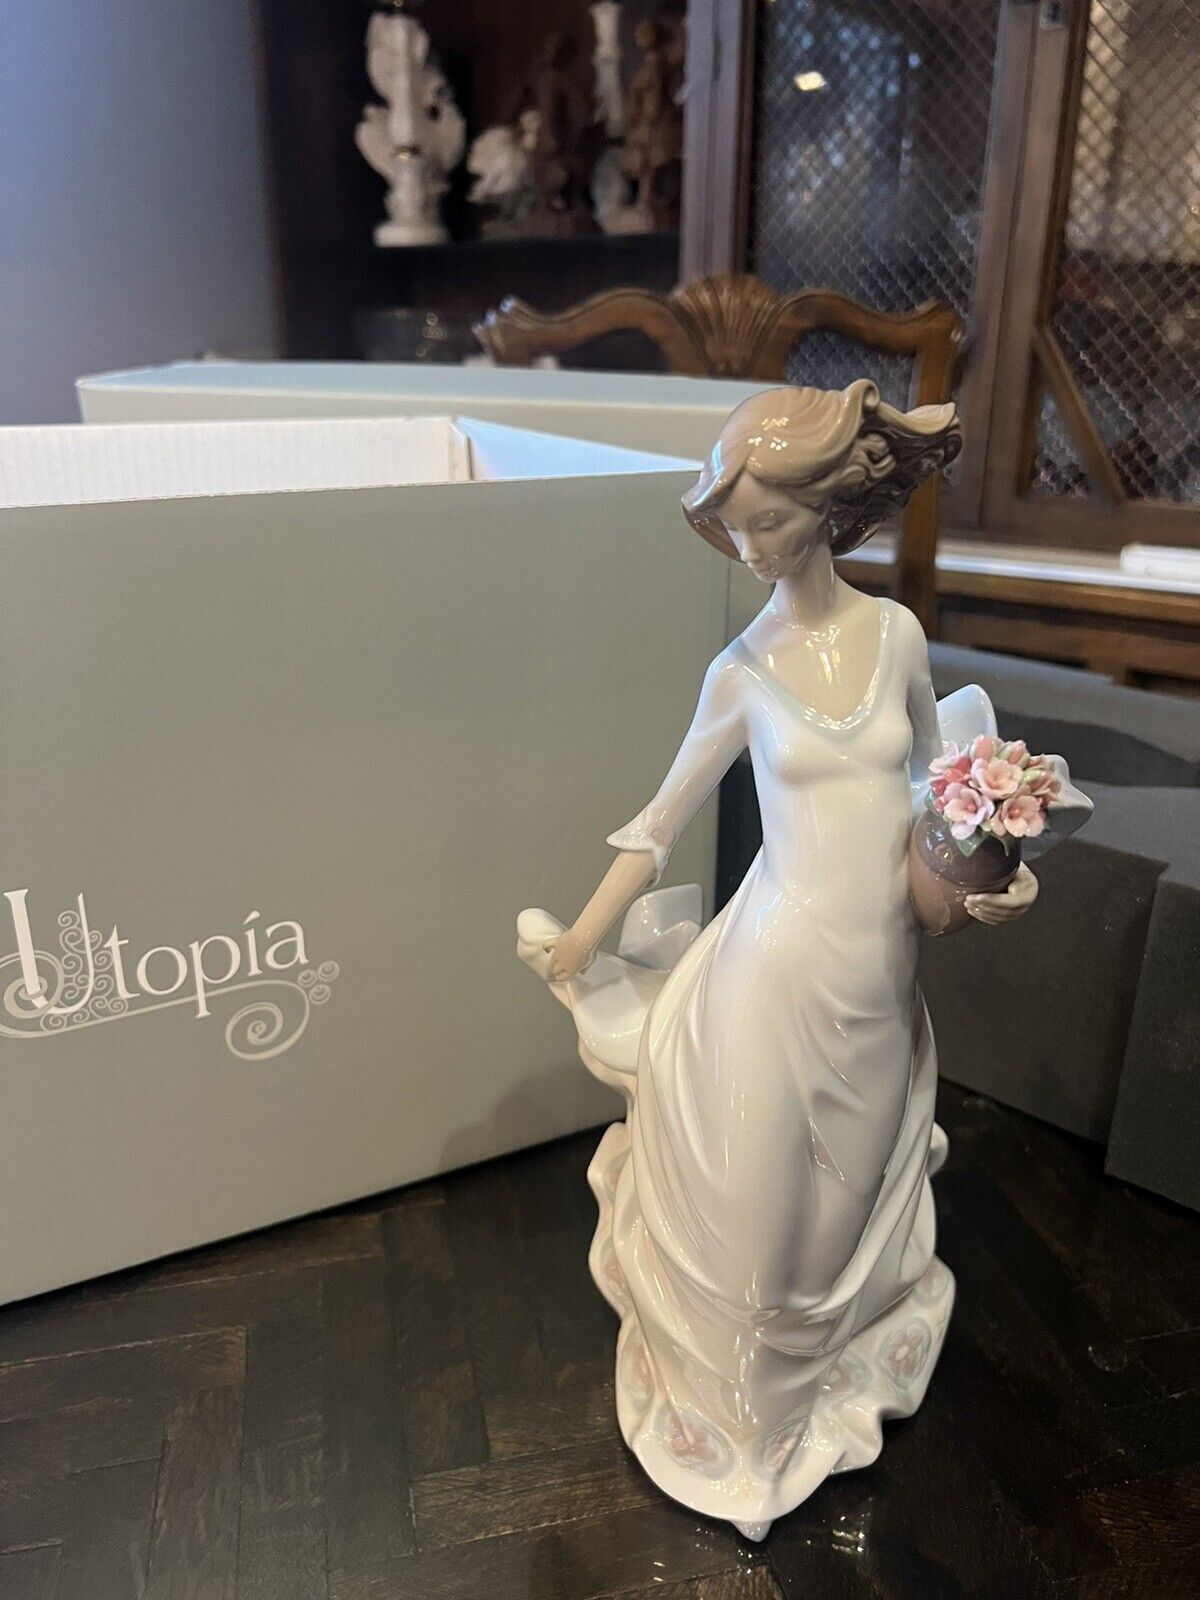 Lladro 8242 reverie moment Utopia 2005 girl pot flower basket lady dress figurin